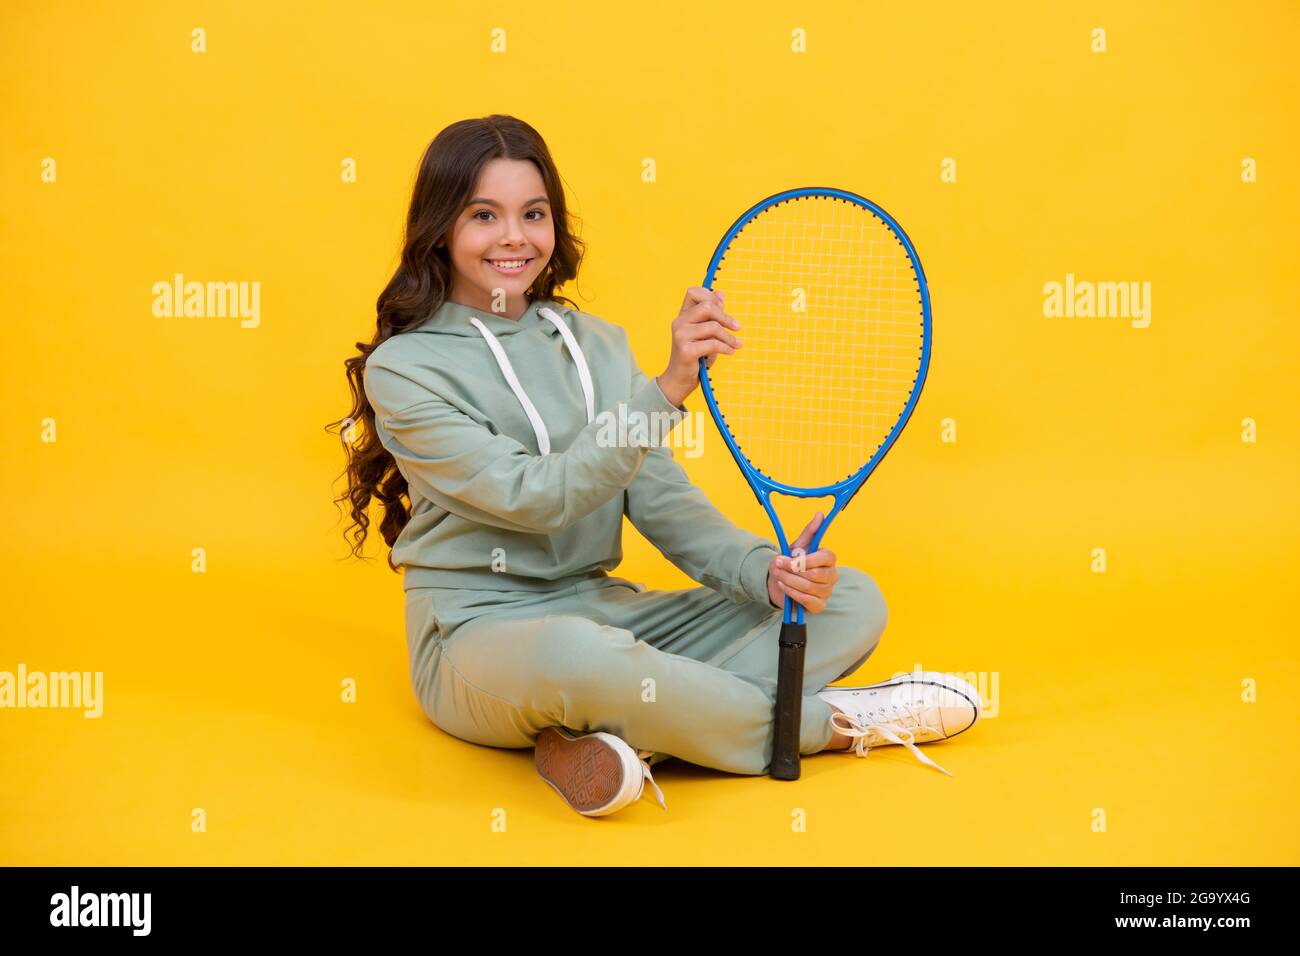 bambino in racchetta sportiva tenere. bambino con racchetta. ragazza teen rilassarsi dopo l'allenamento sportivo. Foto Stock